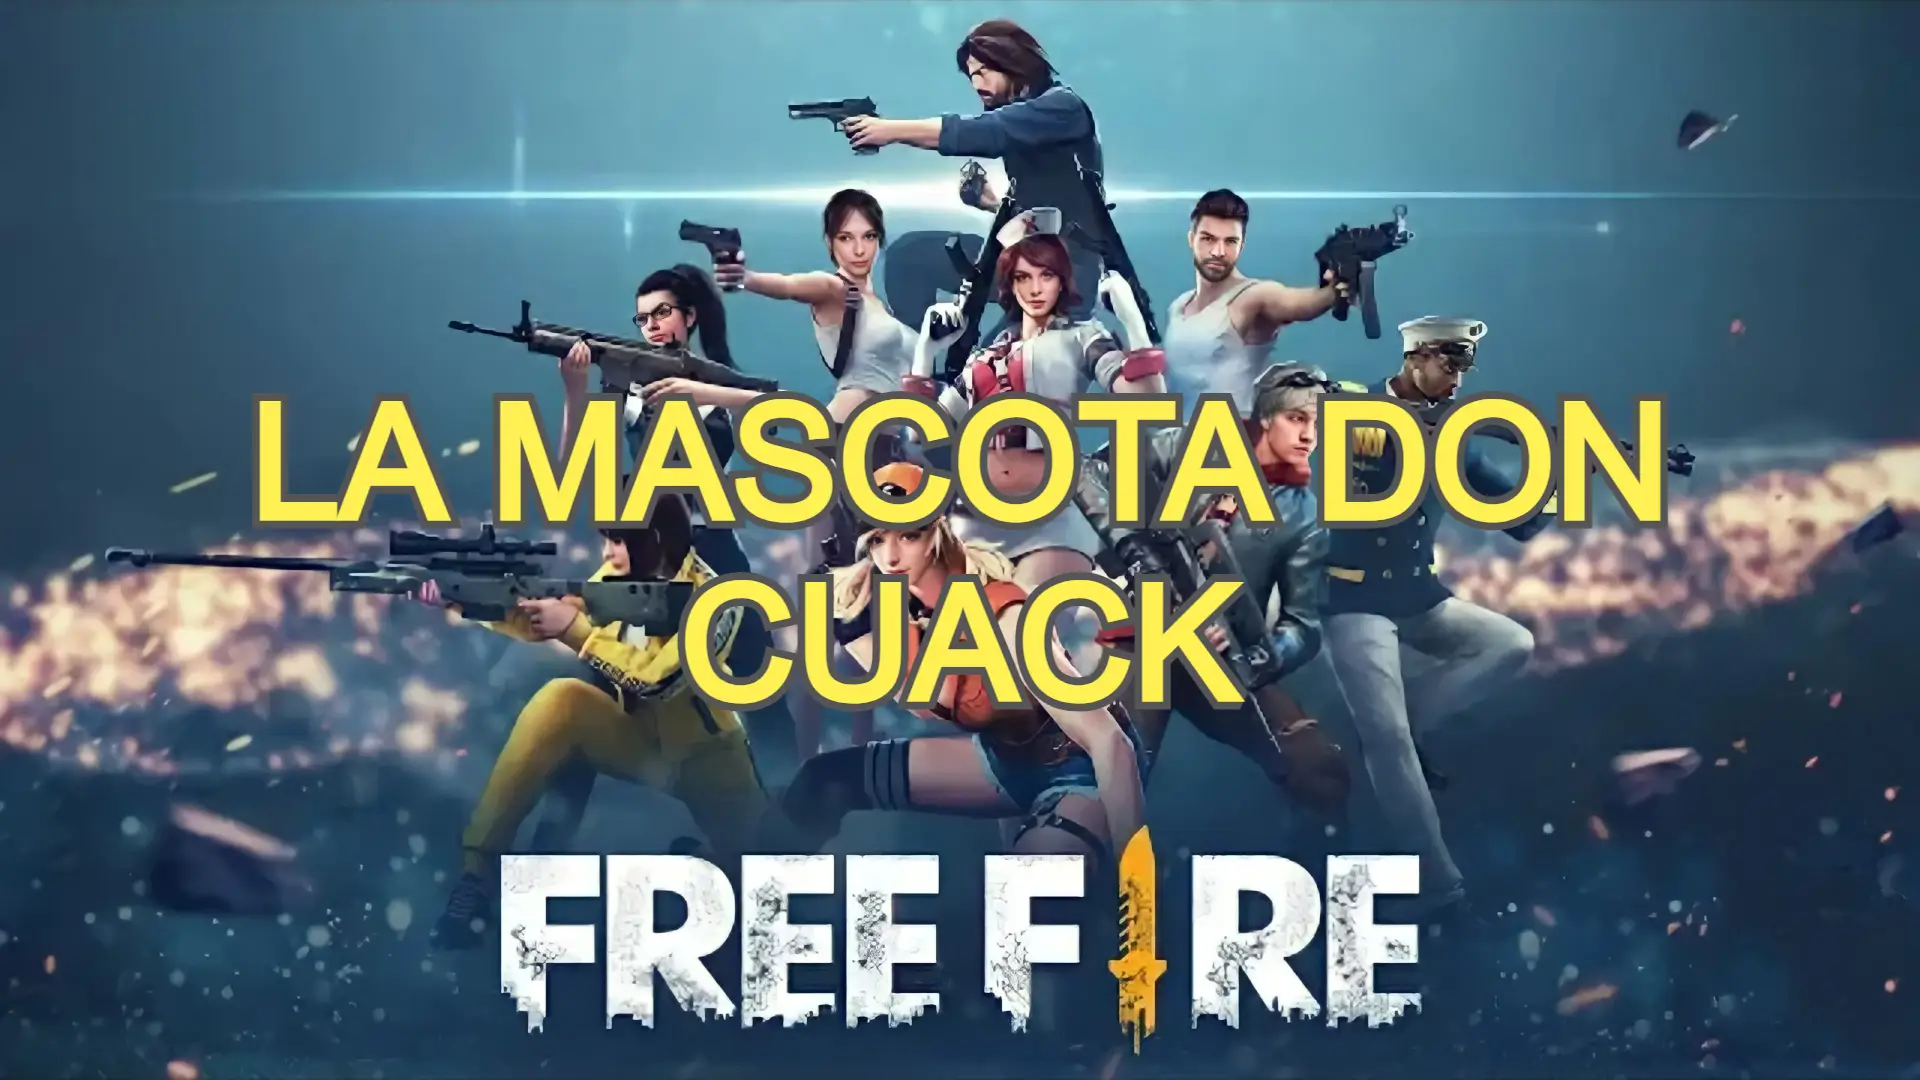 La mascota don cuack free fire